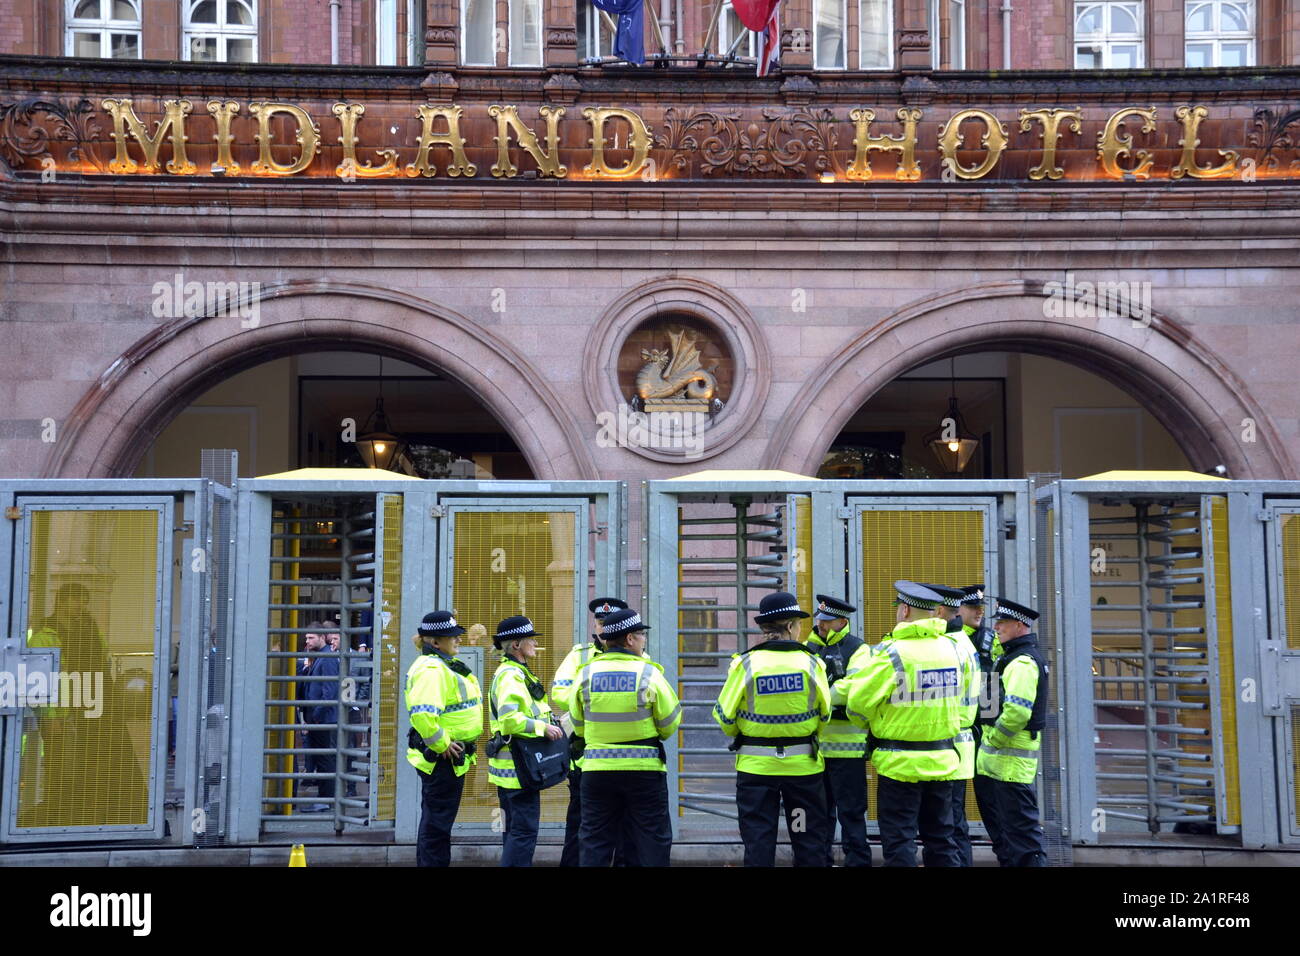 Polizisten außerhalb der eigentlichen Konferenz Hotel, The Midland, wie dem Parteitag der Konservativen Partei, 2019 in Manchester, UK, bereitet zu starten. Es gibt einen massiven Polizeiaufgebot und ein paar Demonstranten als die Debatte über Brexit erreicht einen Höhepunkt. Stockfoto